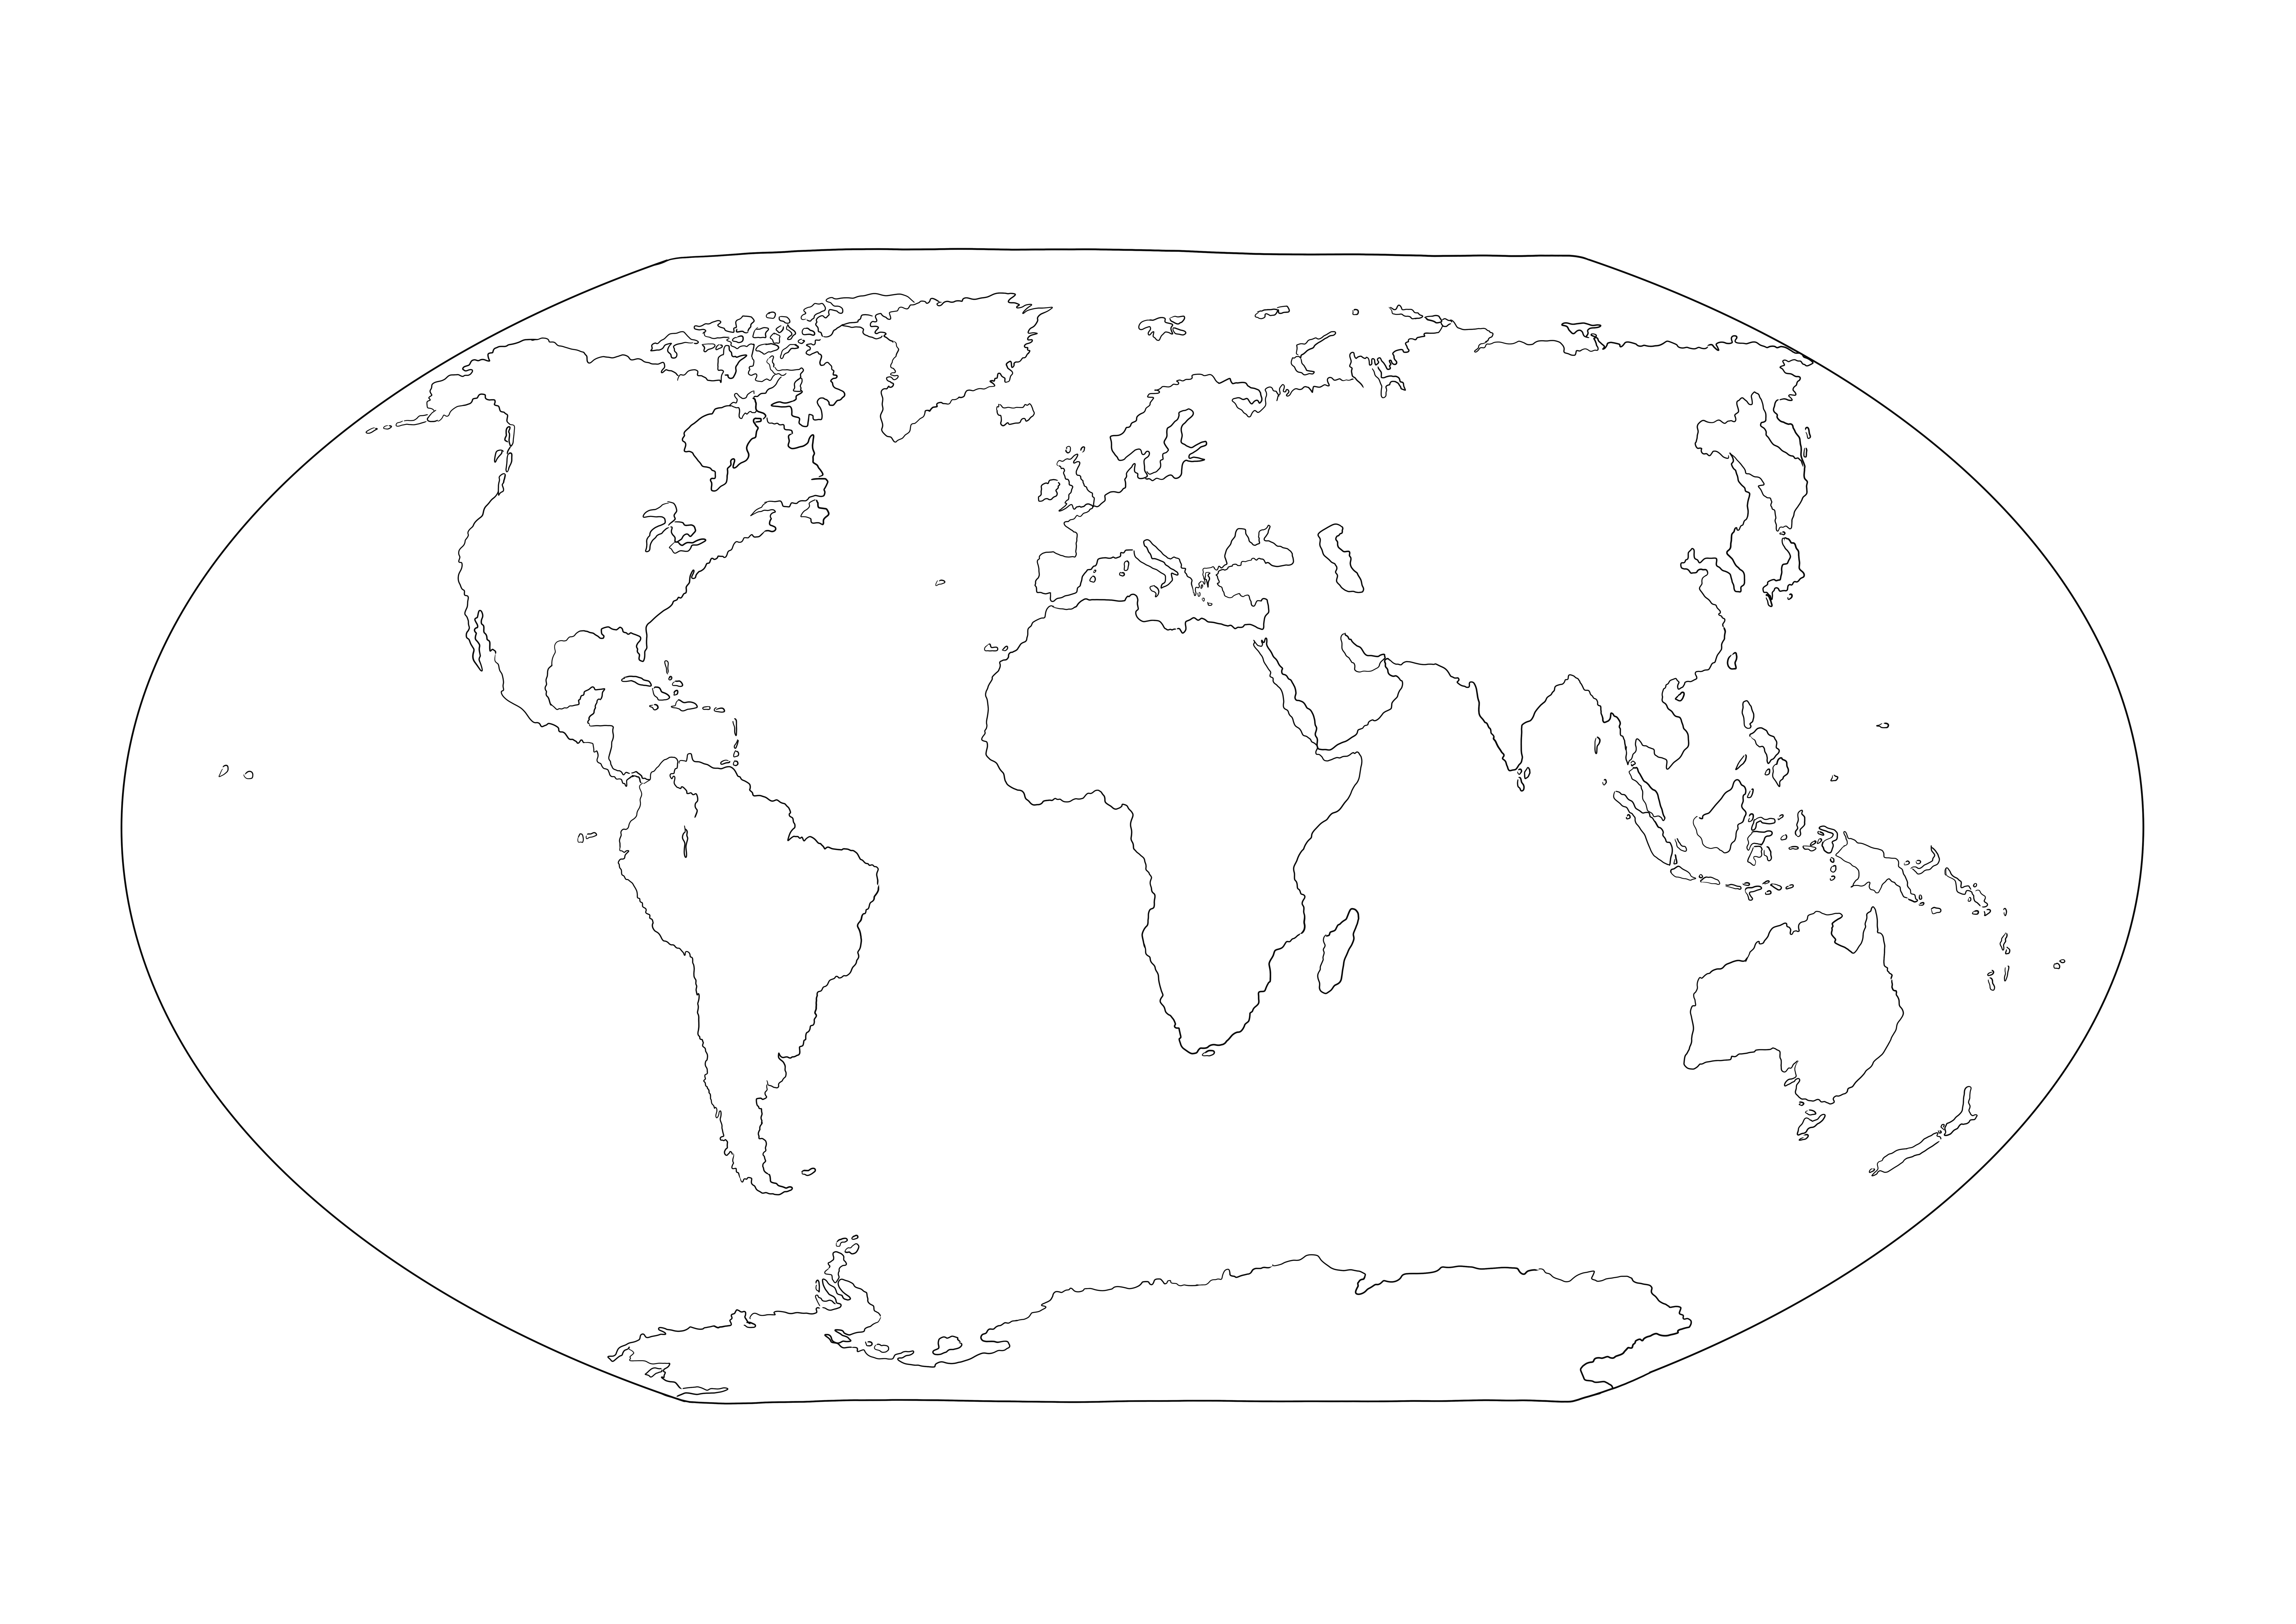 Una página completa del mapa mundial imprimible gratis para colorear de forma sencilla